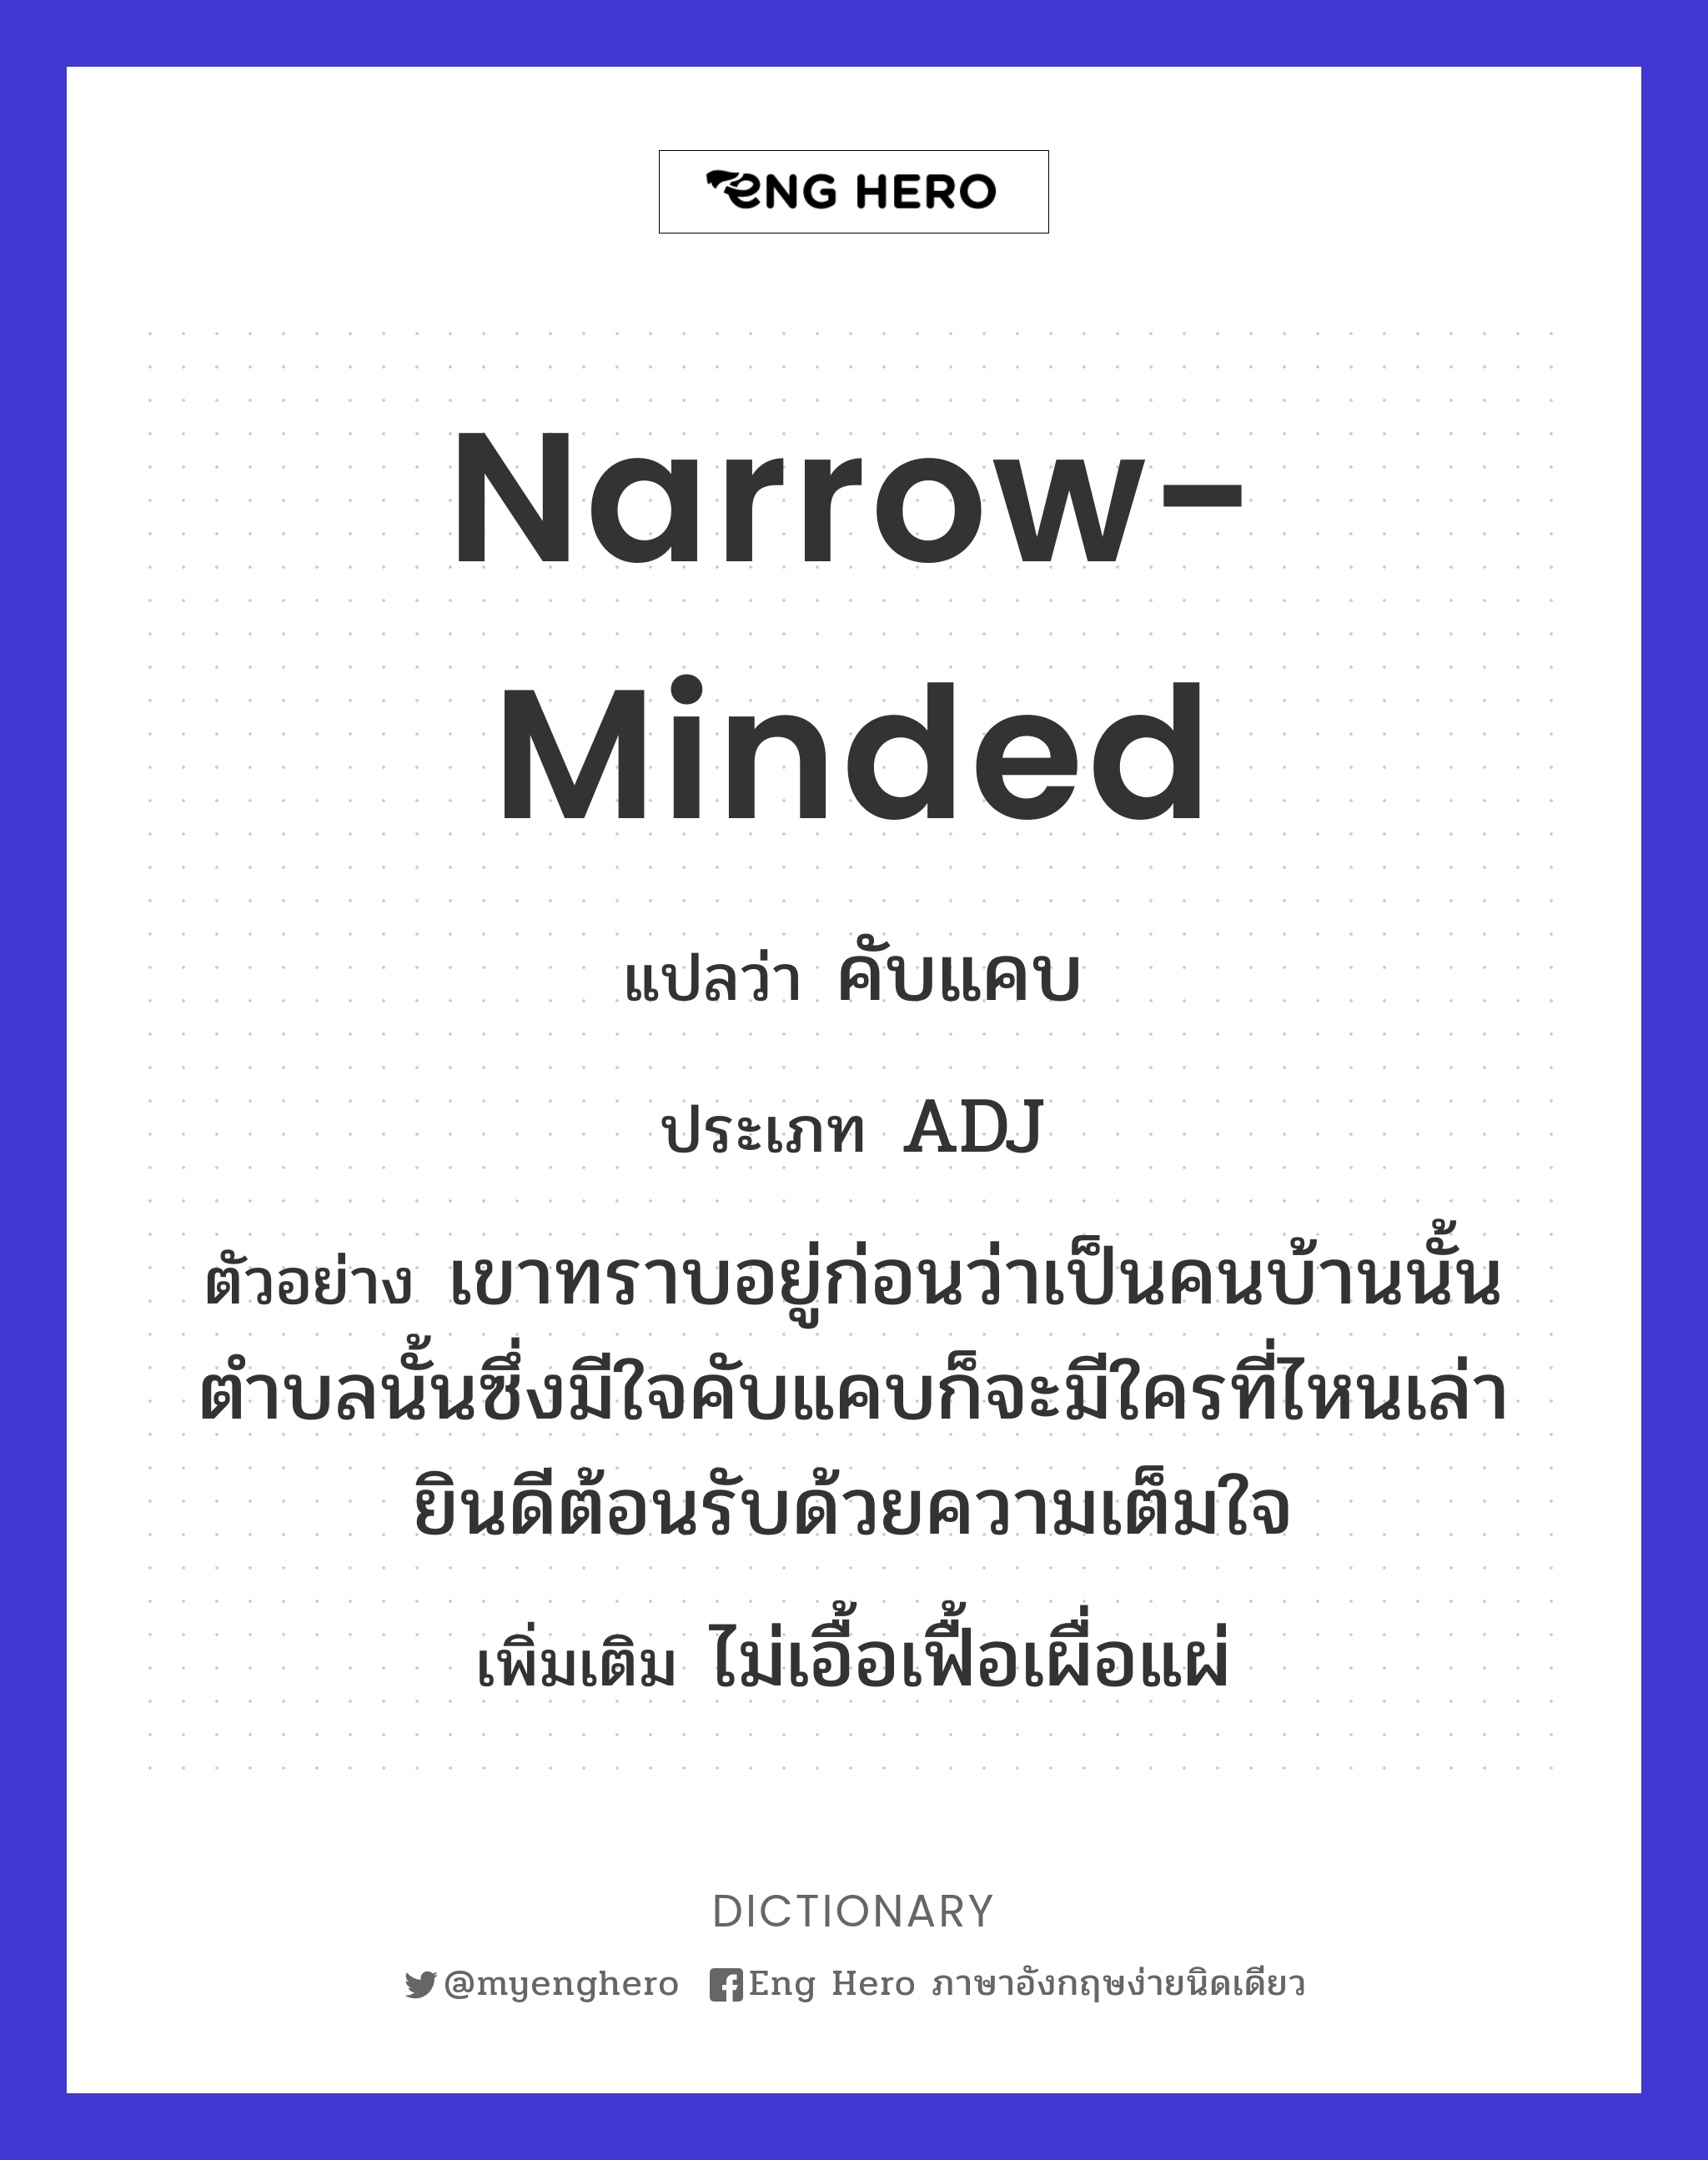 narrow-minded